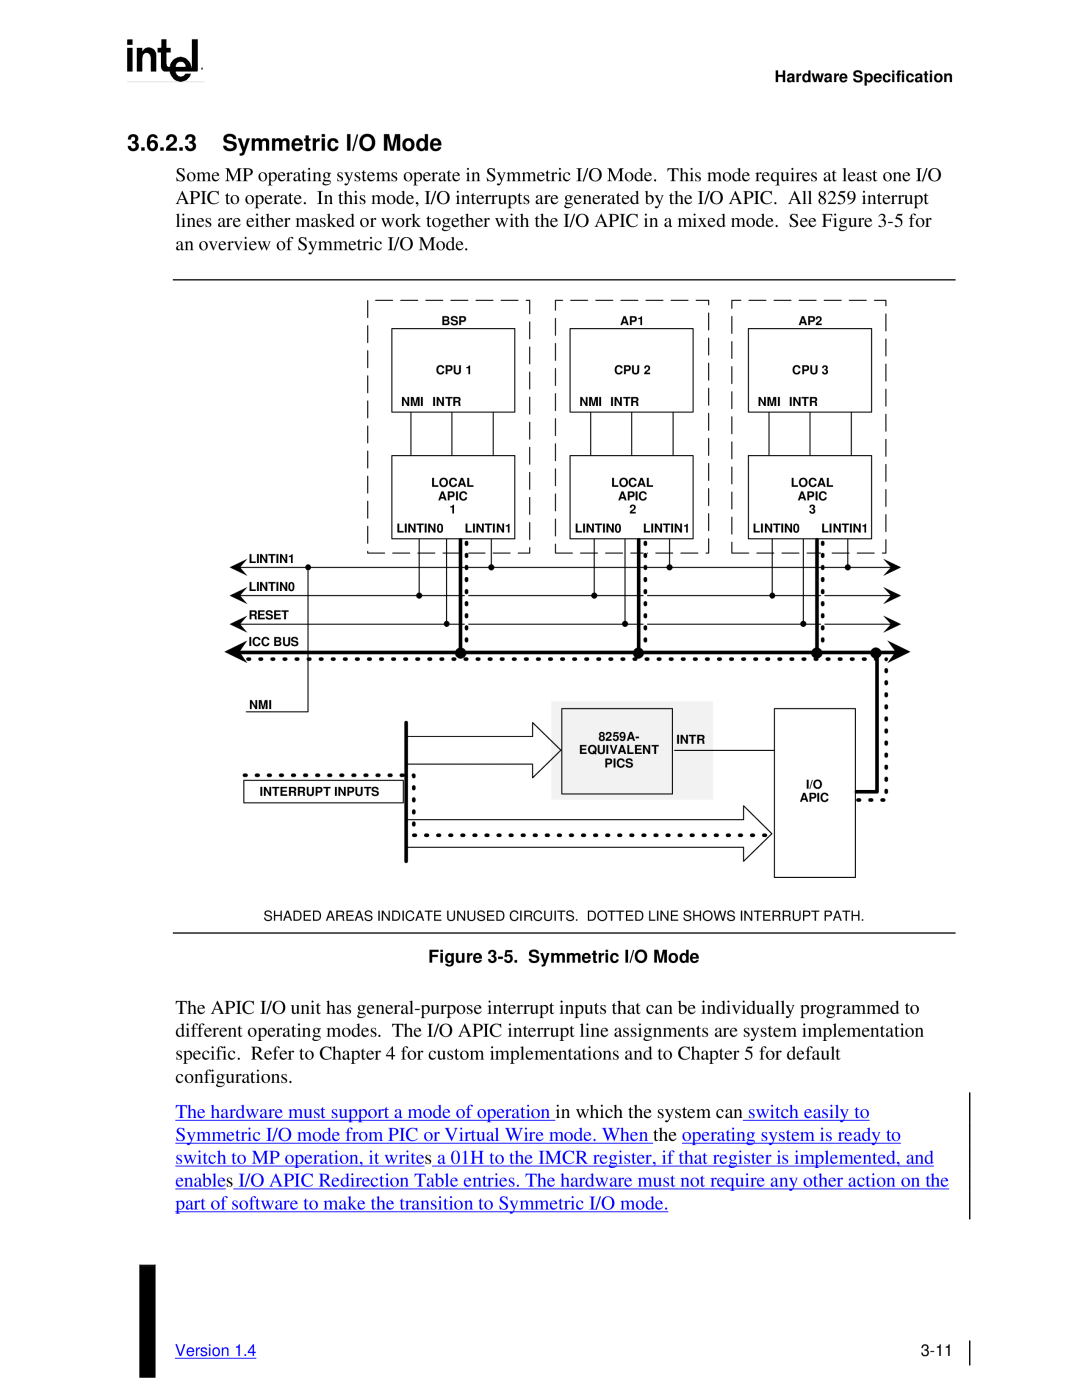 Intel MultiProcessor manual 3.6.2.3Symmetric I/O Mode, 5.Symmetric I/O Mode 